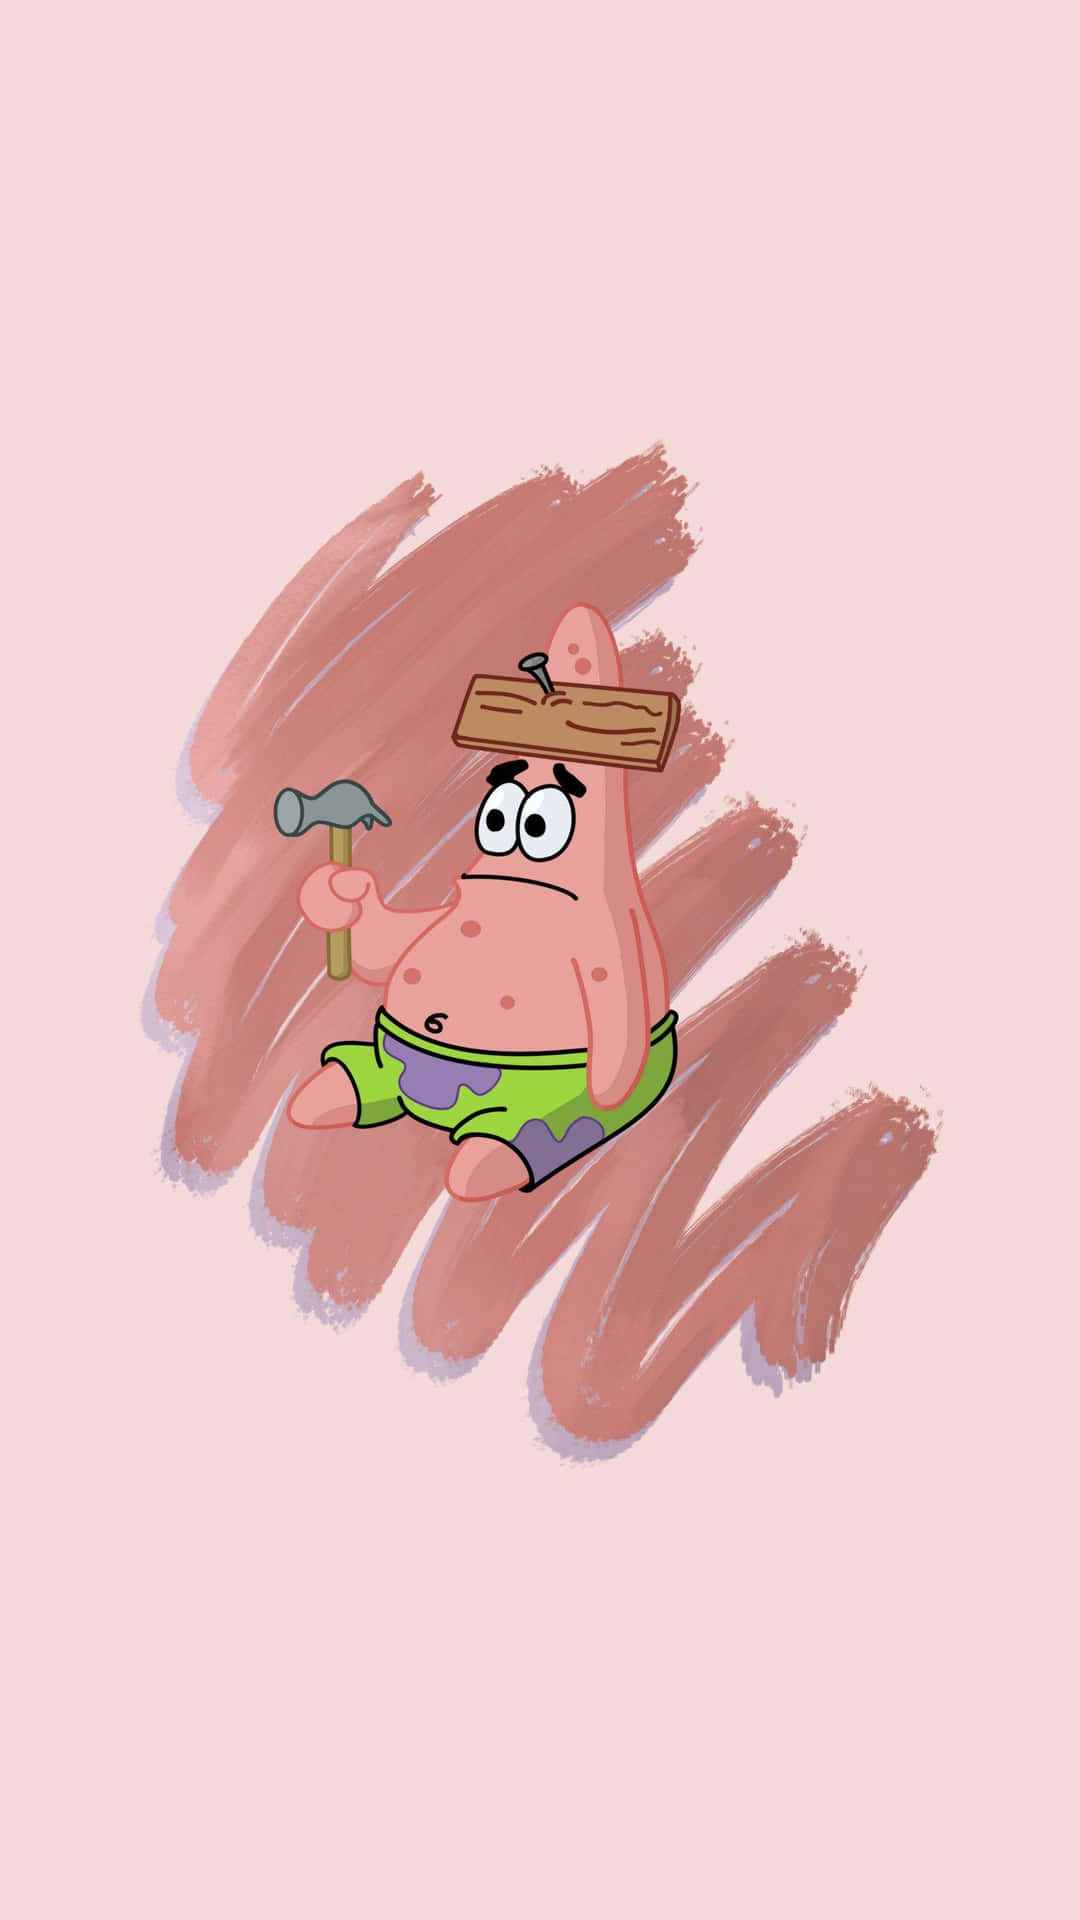 Patrick,la Simpatica Stella Marina Di Spongebob, Pronto Per L'avventura! Sfondo